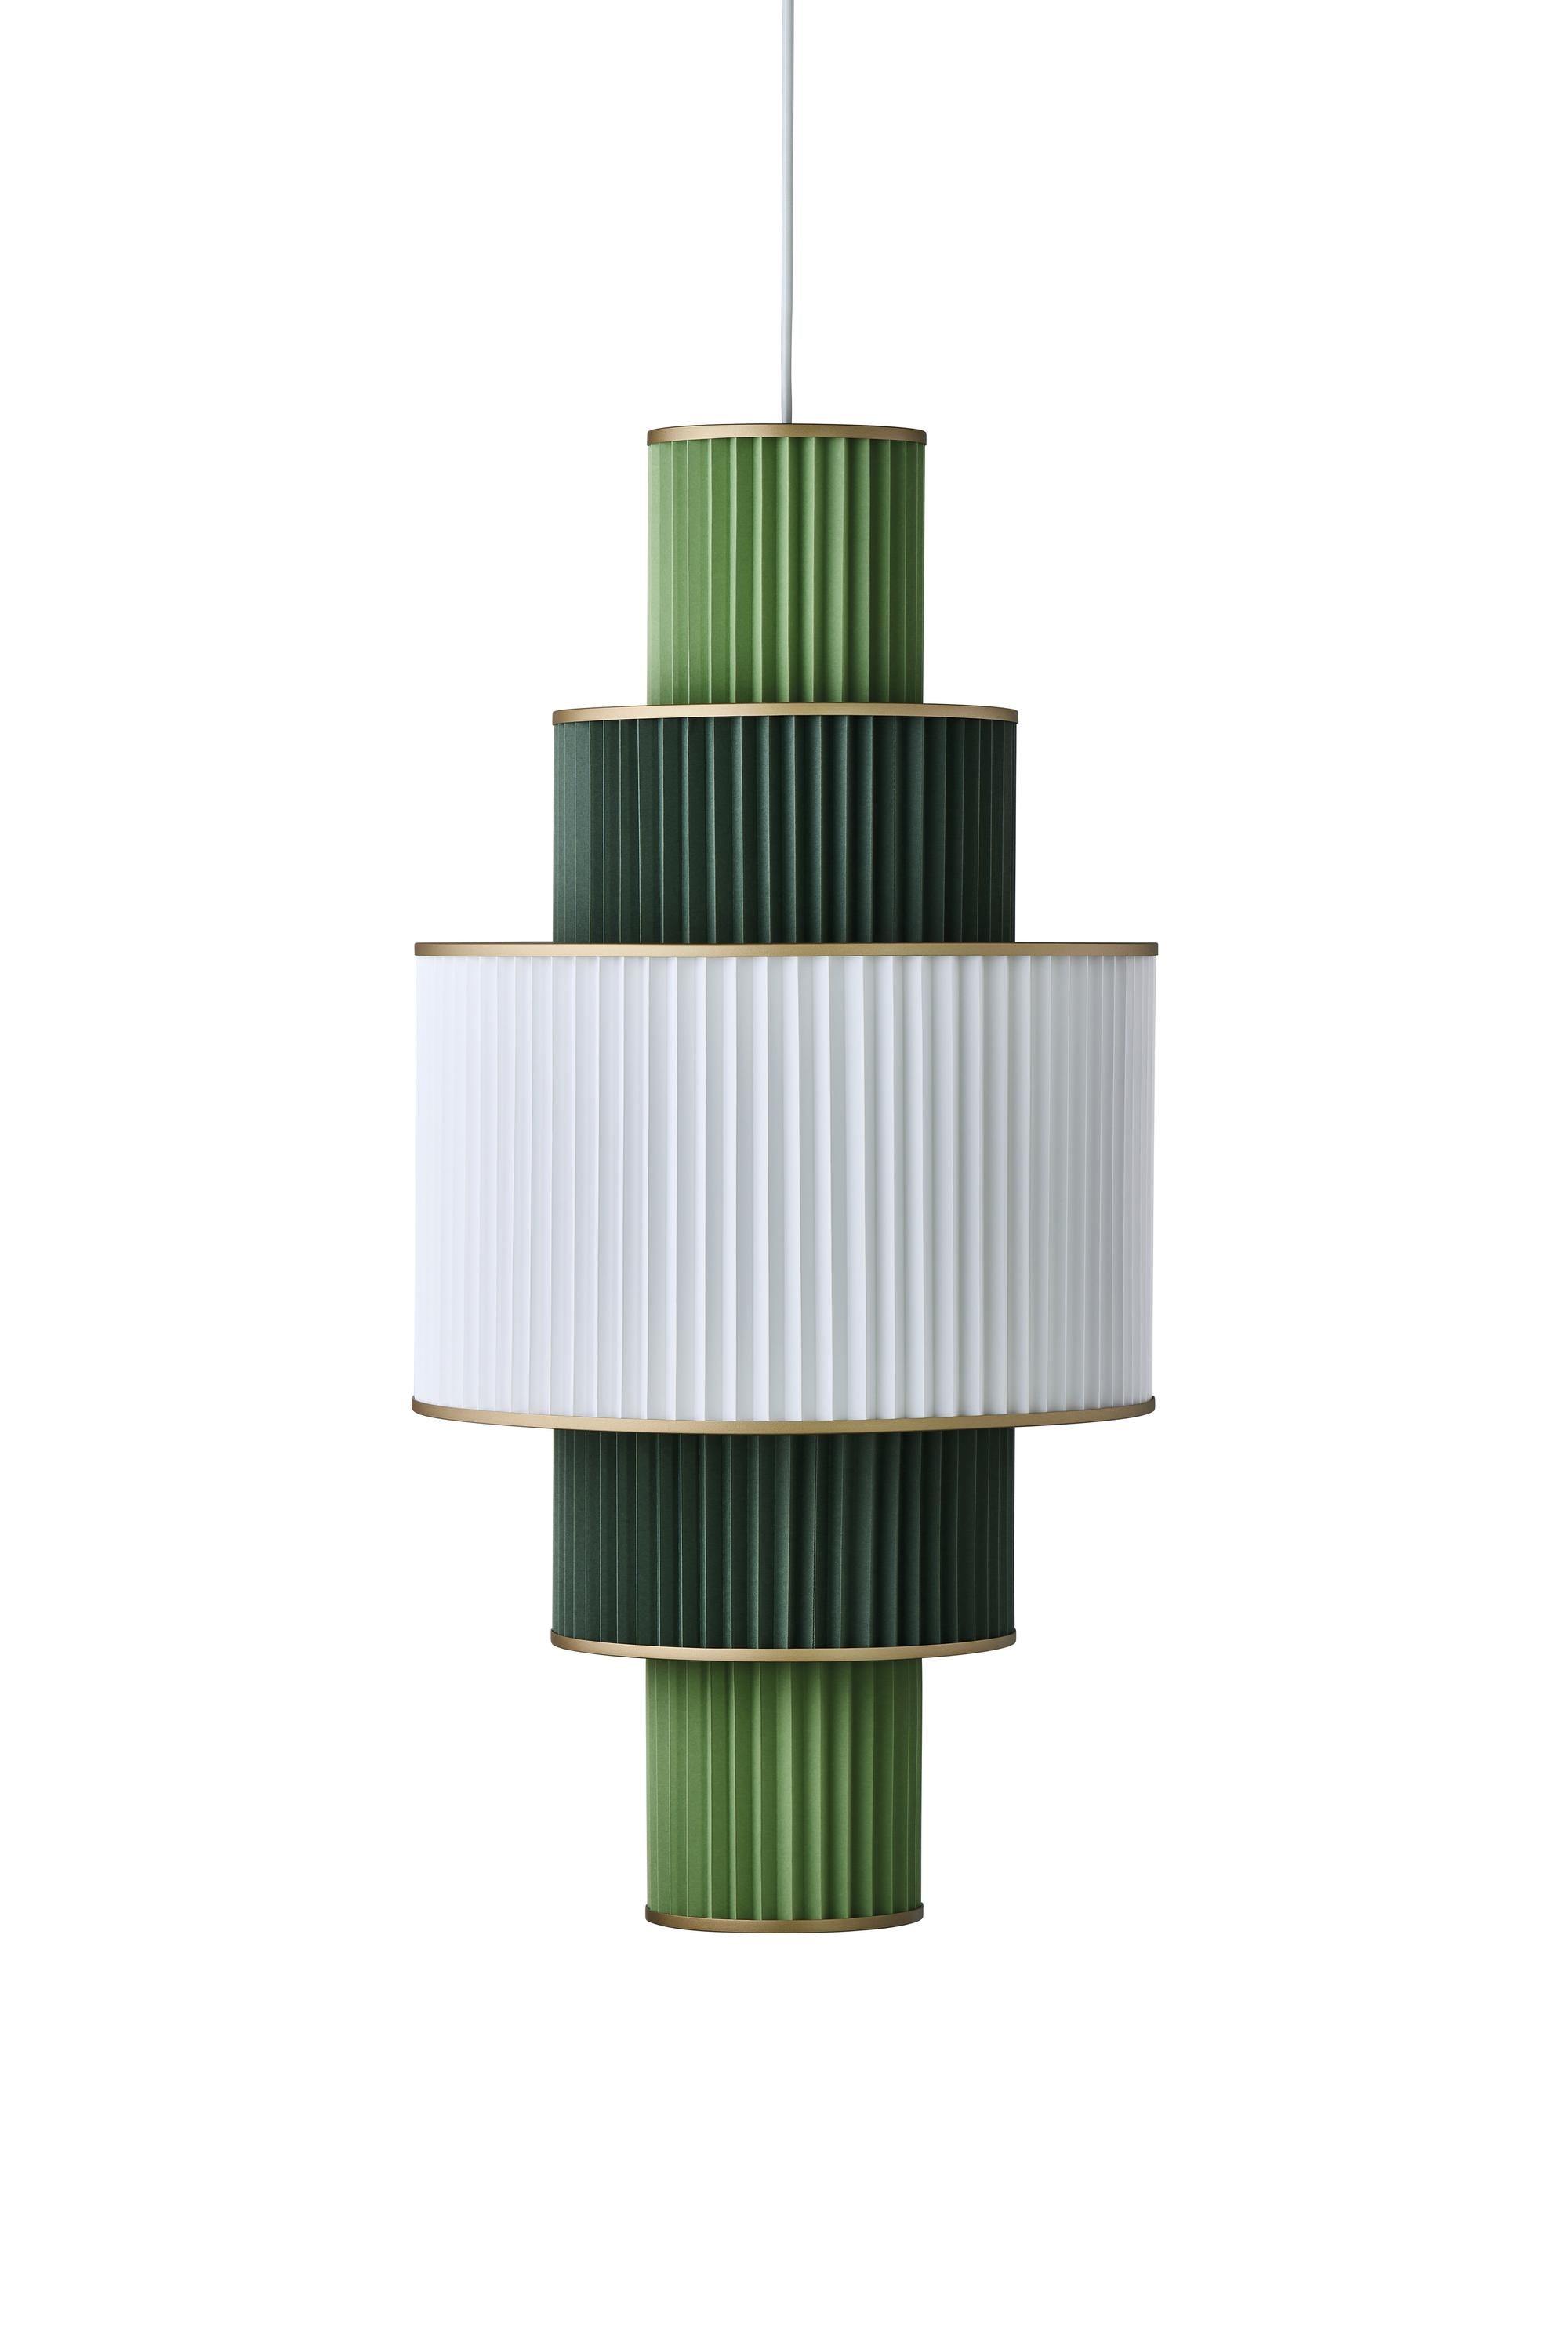 Le Klint Plivello -ophængslamp Gylden/hvid/lysegrøn med 5 nuancer (S M L M S)